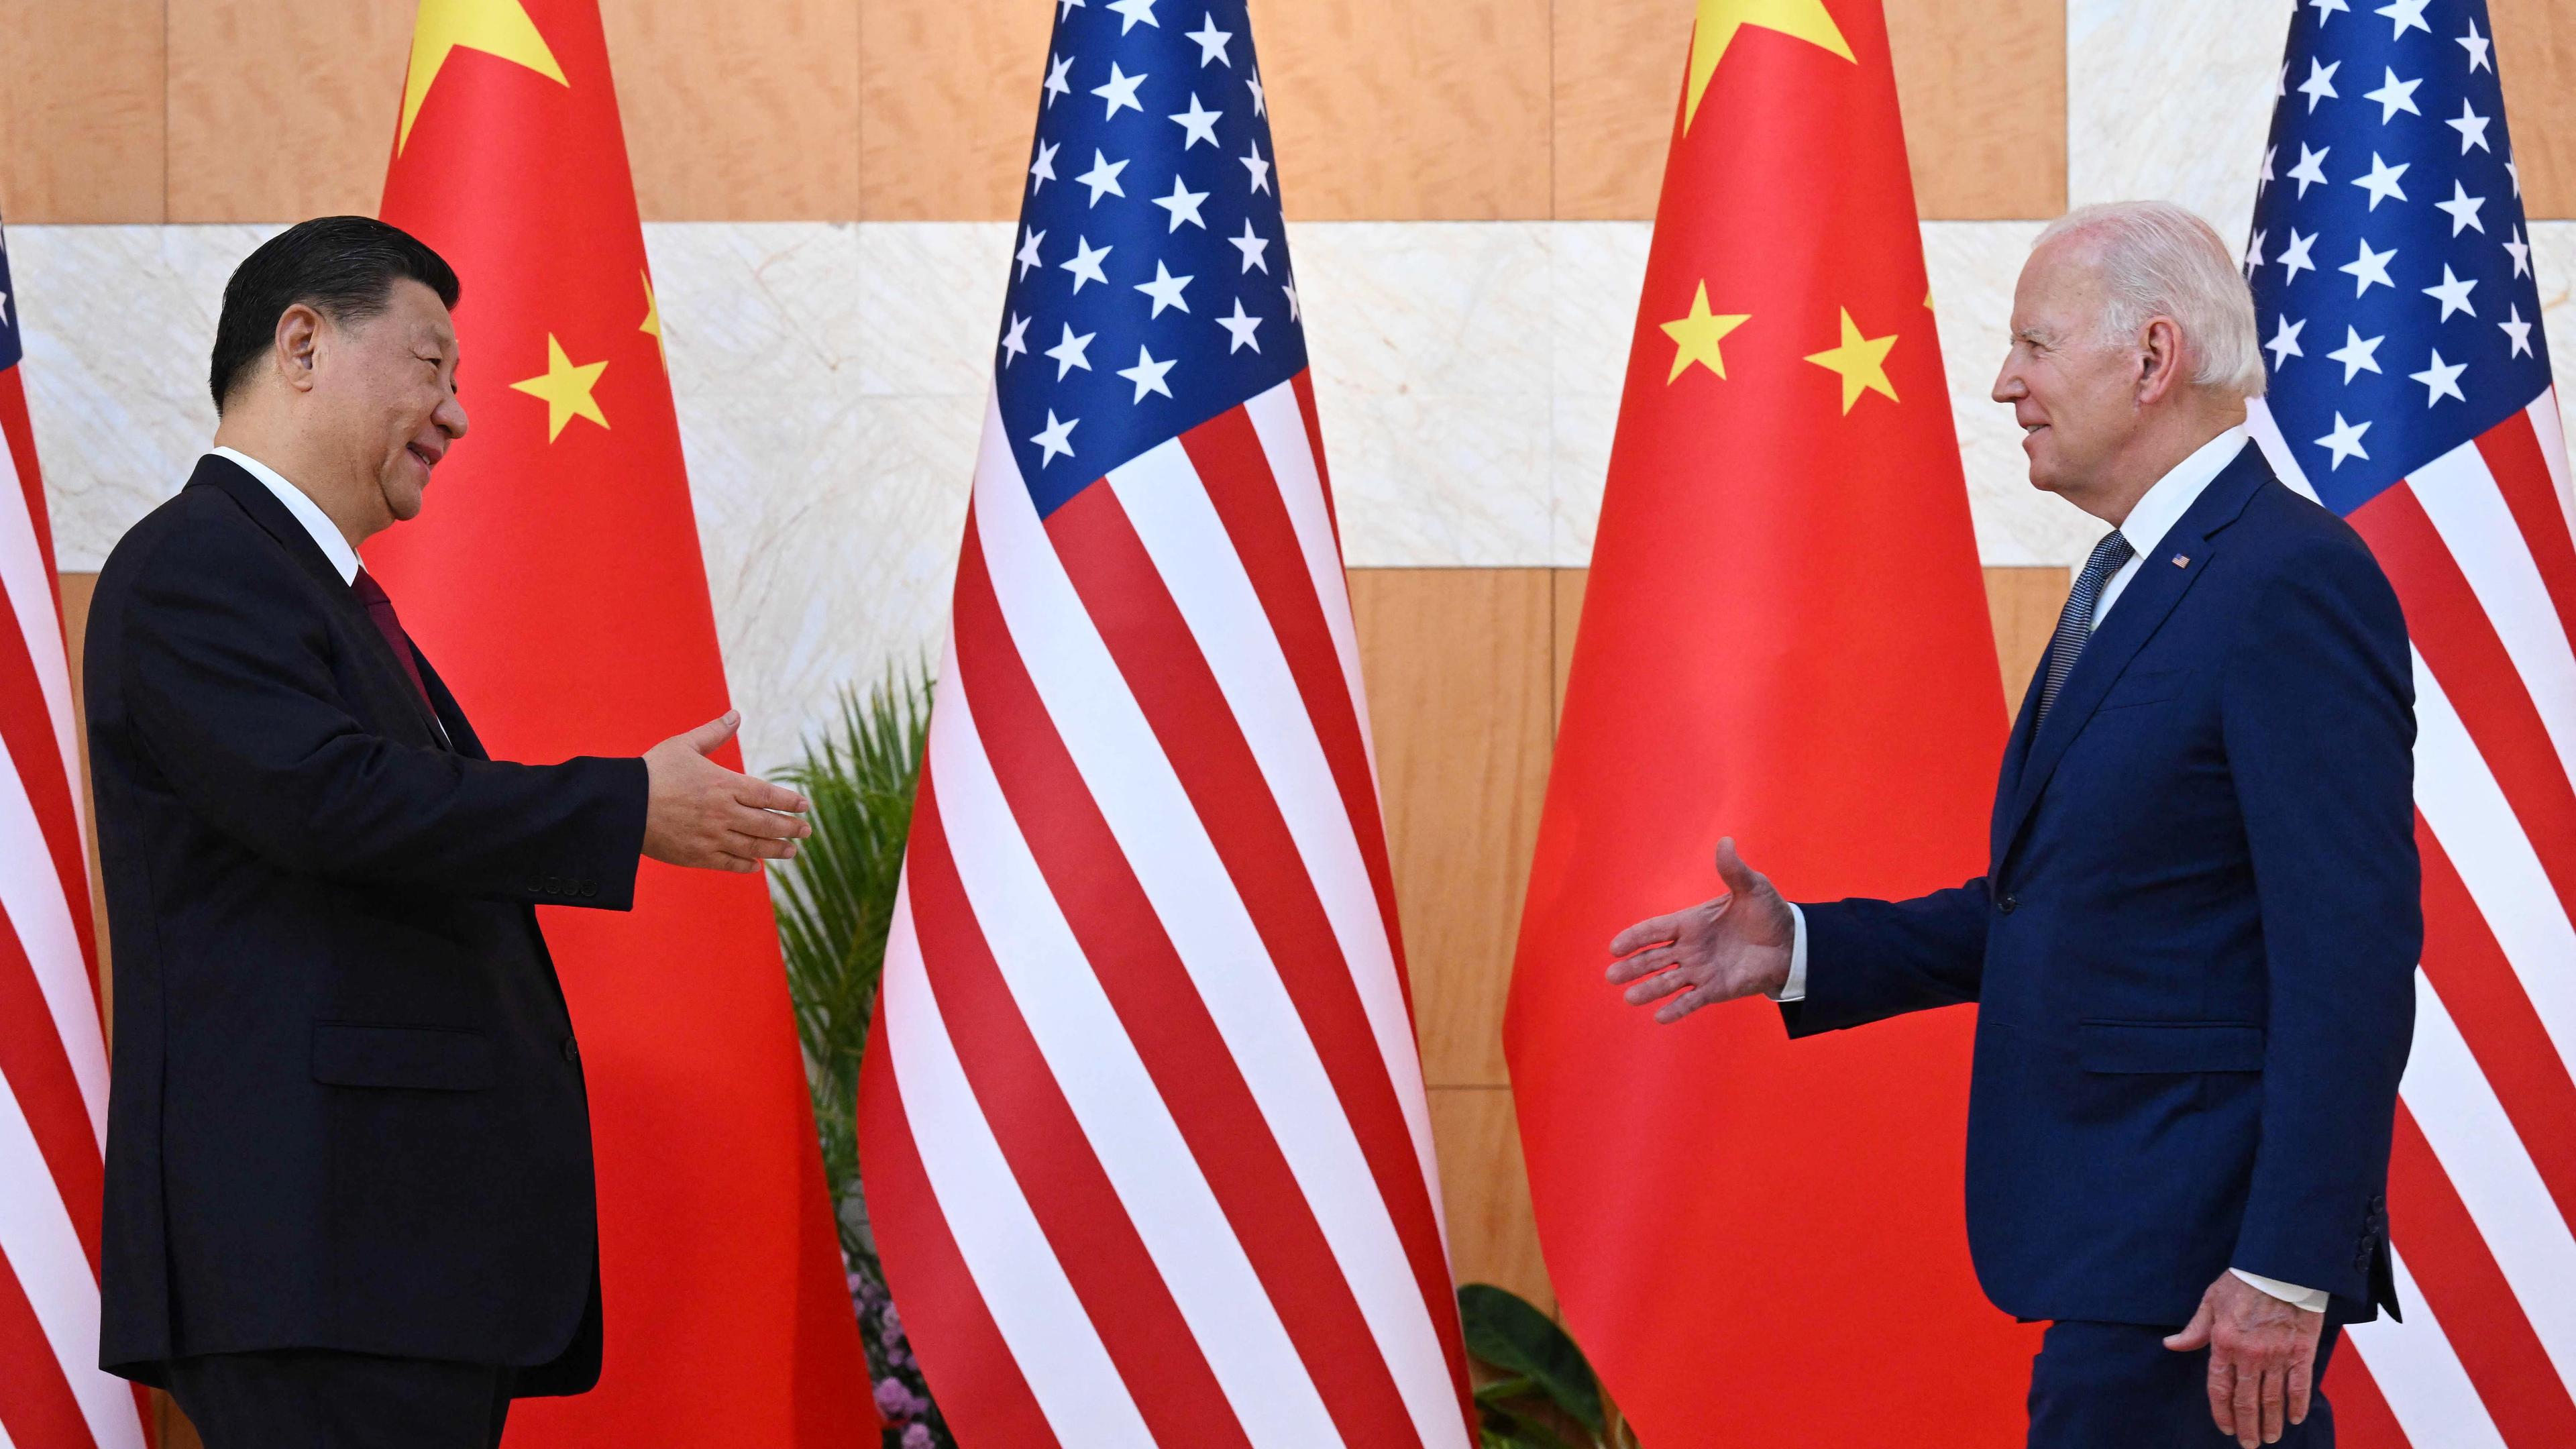 Joe Biden (r.) und Xi Jinping stehen bei einem Treffen auf dem G20-Gipfel nebeneinander, aufgenommen am 14.11.2022